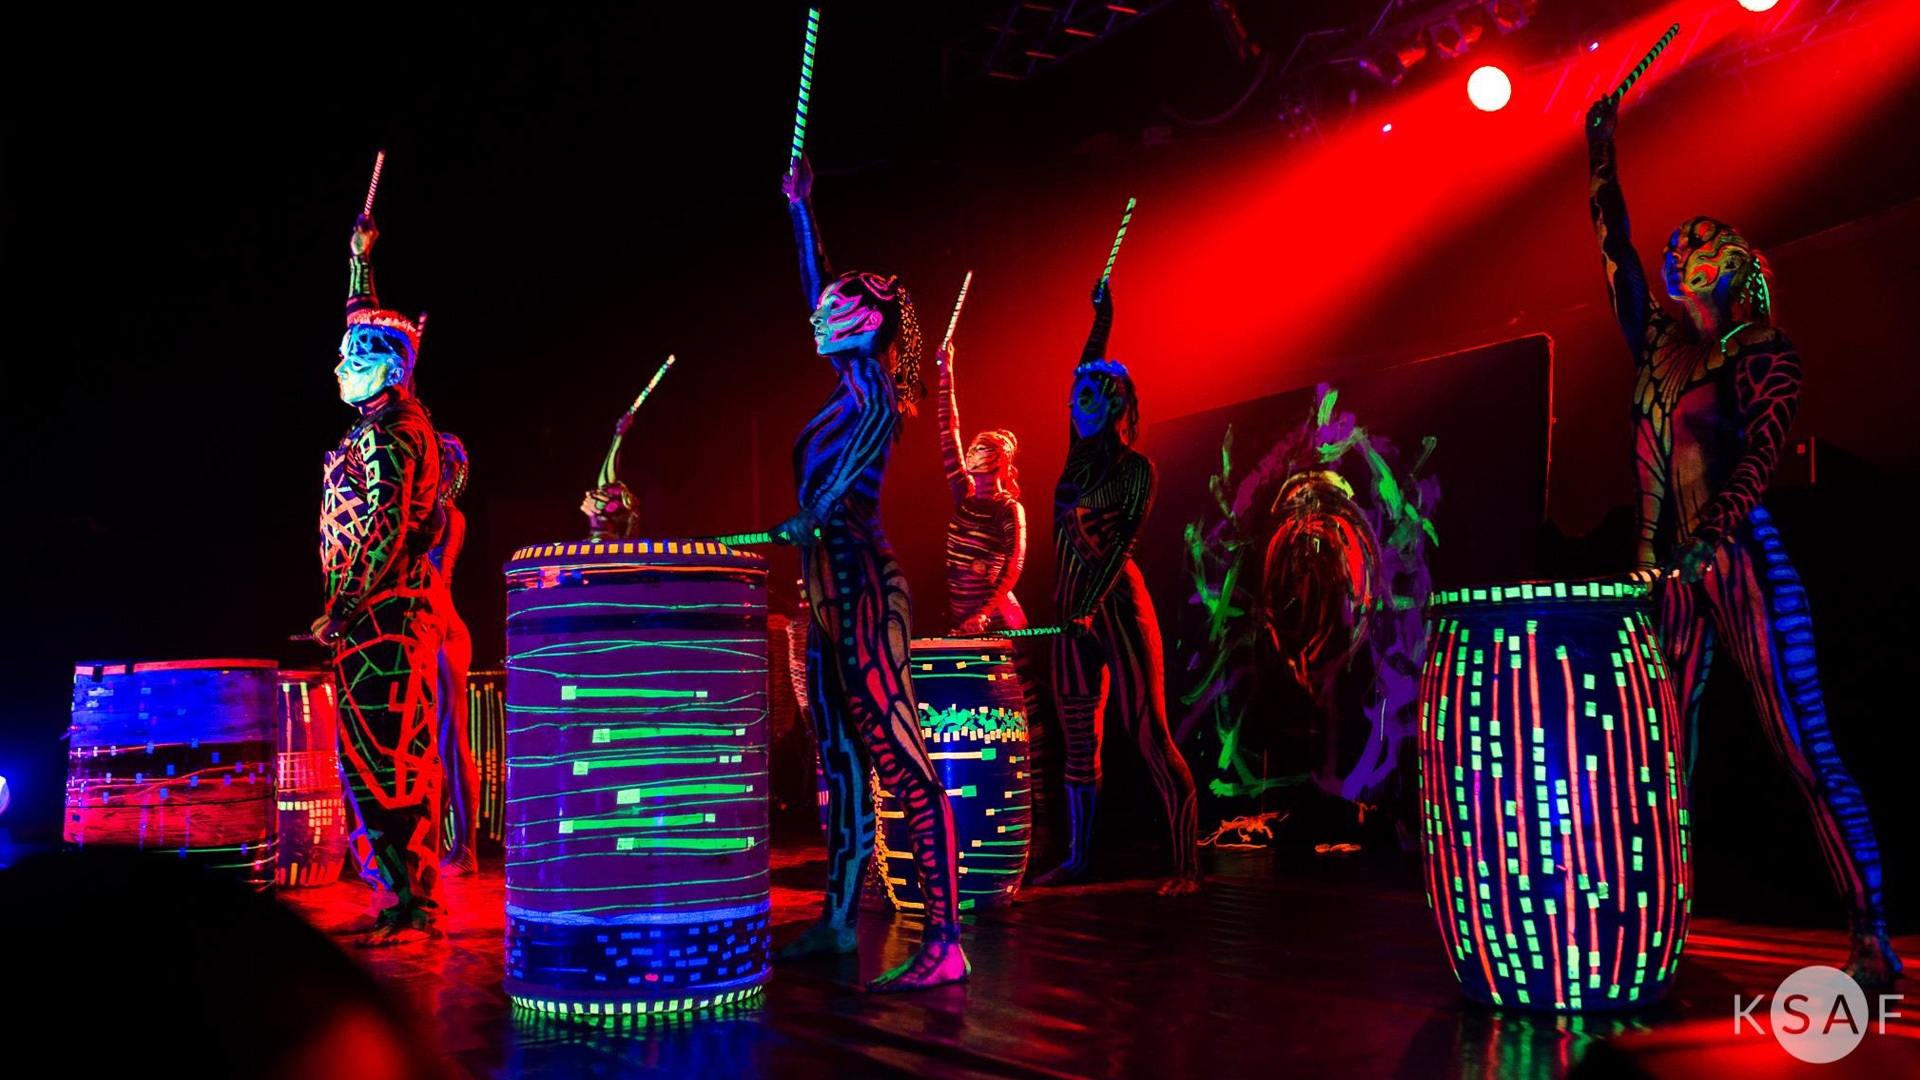 Zdjęcie występu scenicznego zespołu artystów stojących przez dużymi bębnami. Odziani są we wzorzyste kostiumy, których kolory widoczne są w świetle ultrafioletowym. Na scenie panuje półmrok kontrastujący z feerią barw kostiumów.